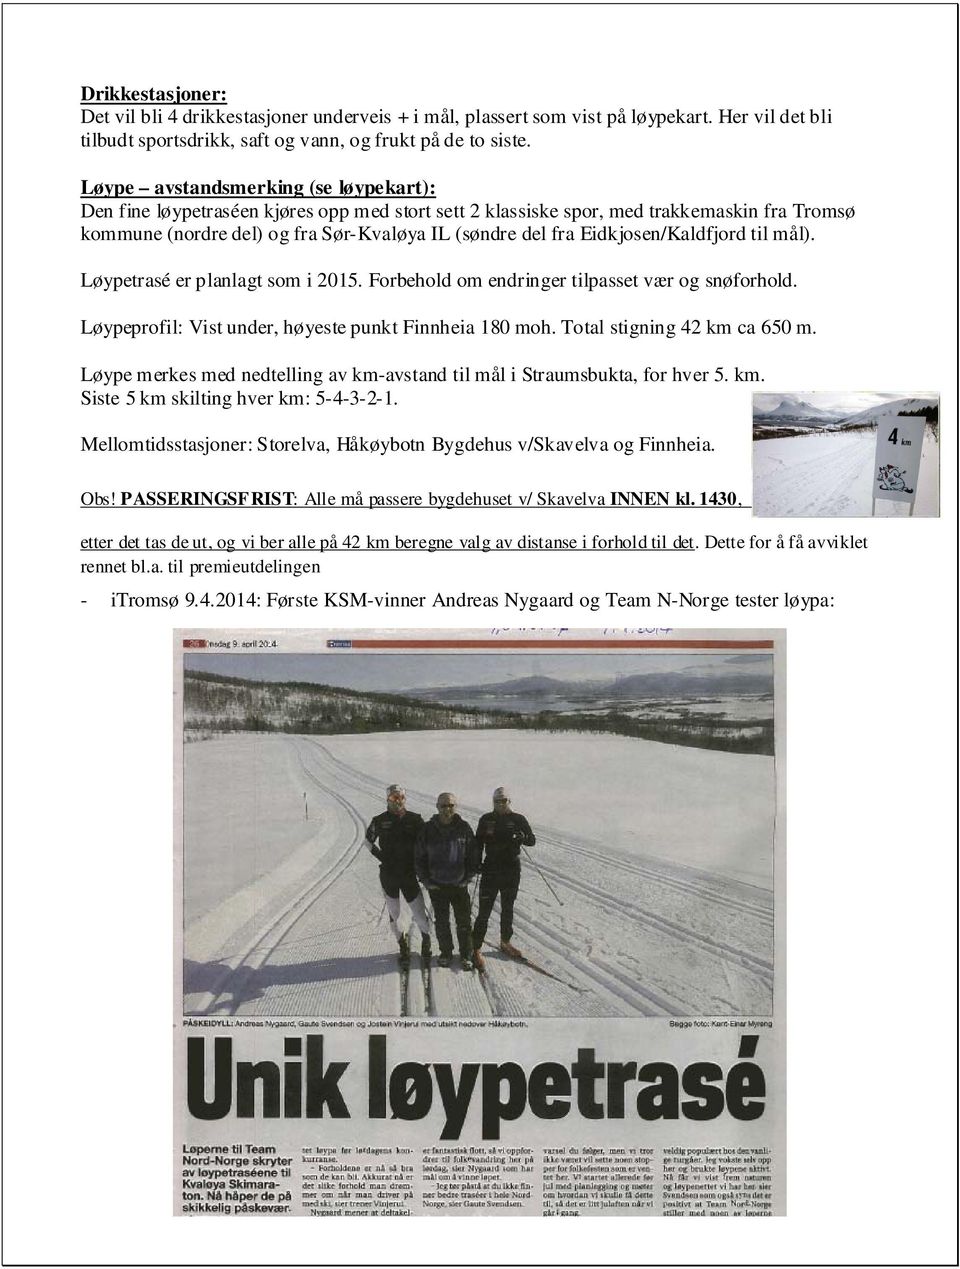 Eidkjosen/Kaldfjord til mål). Løypetrasé er planlagt som i 2015. Forbehold om endringer tilpasset vær og snøforhold. Løypeprofil: Vist under, høyeste punkt Finnheia 180 moh.